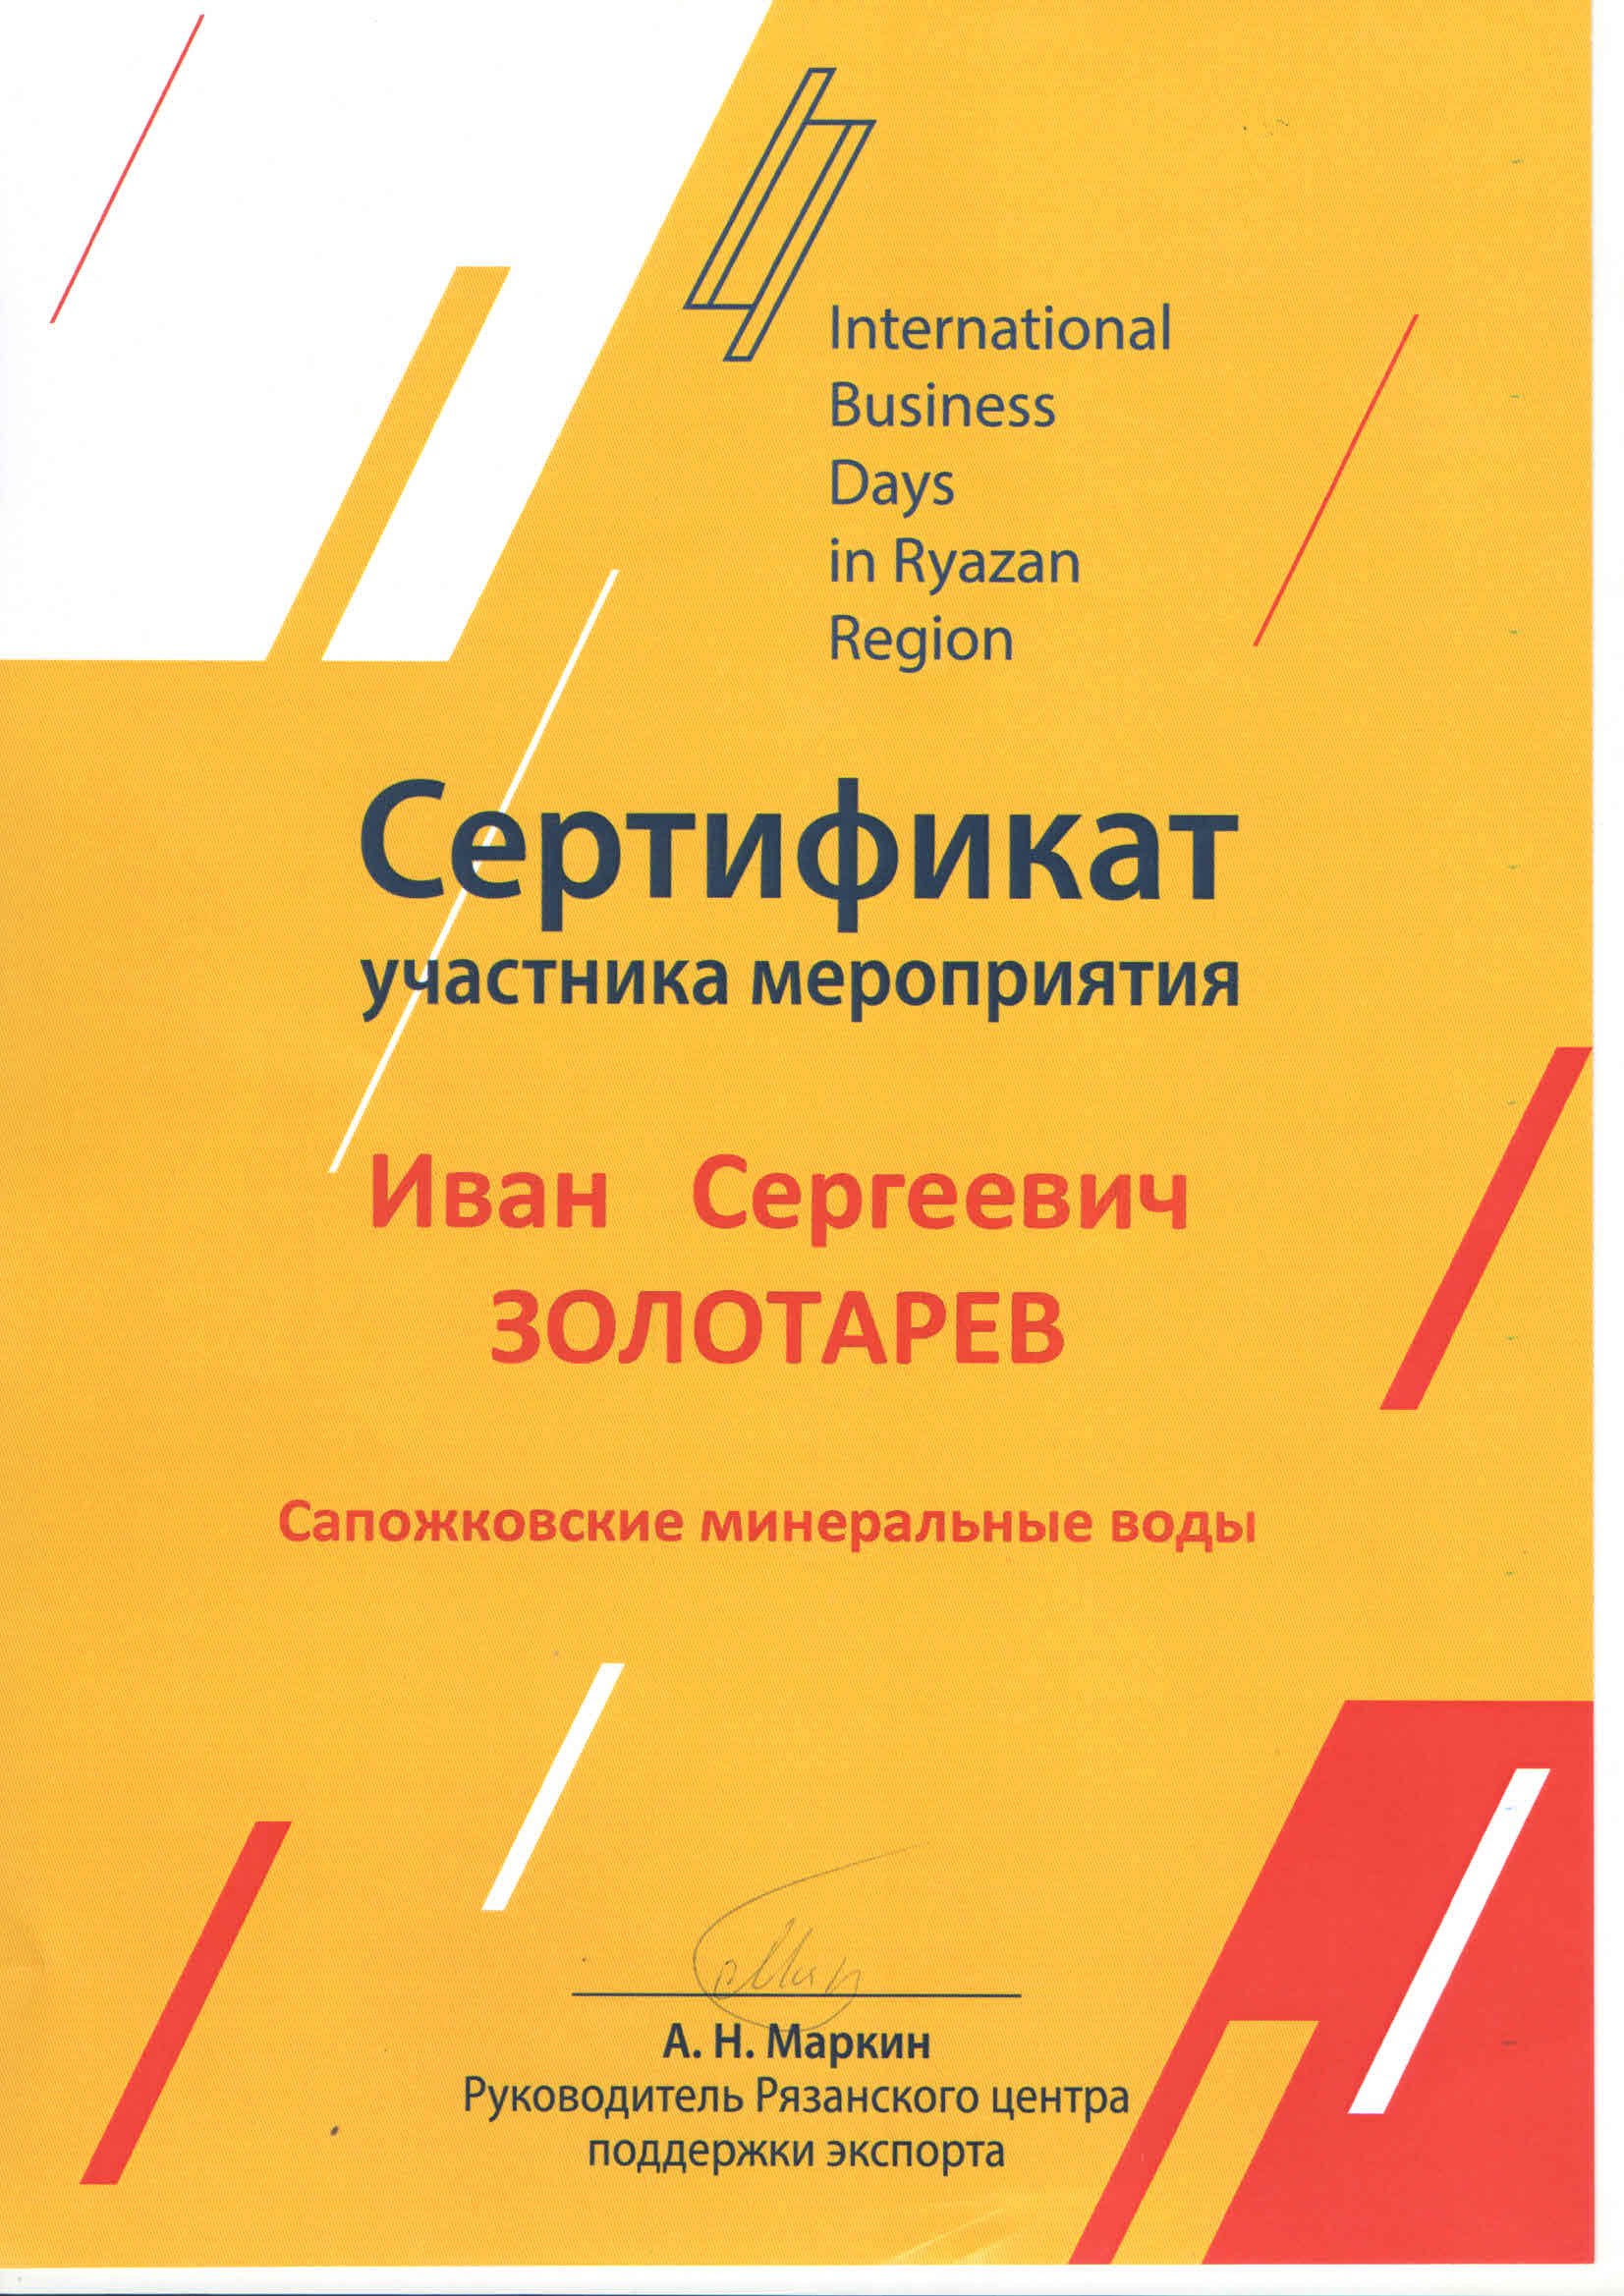 Выставка экспортноориентированных предприятий в рамках форума "Дни международного бизнеса"